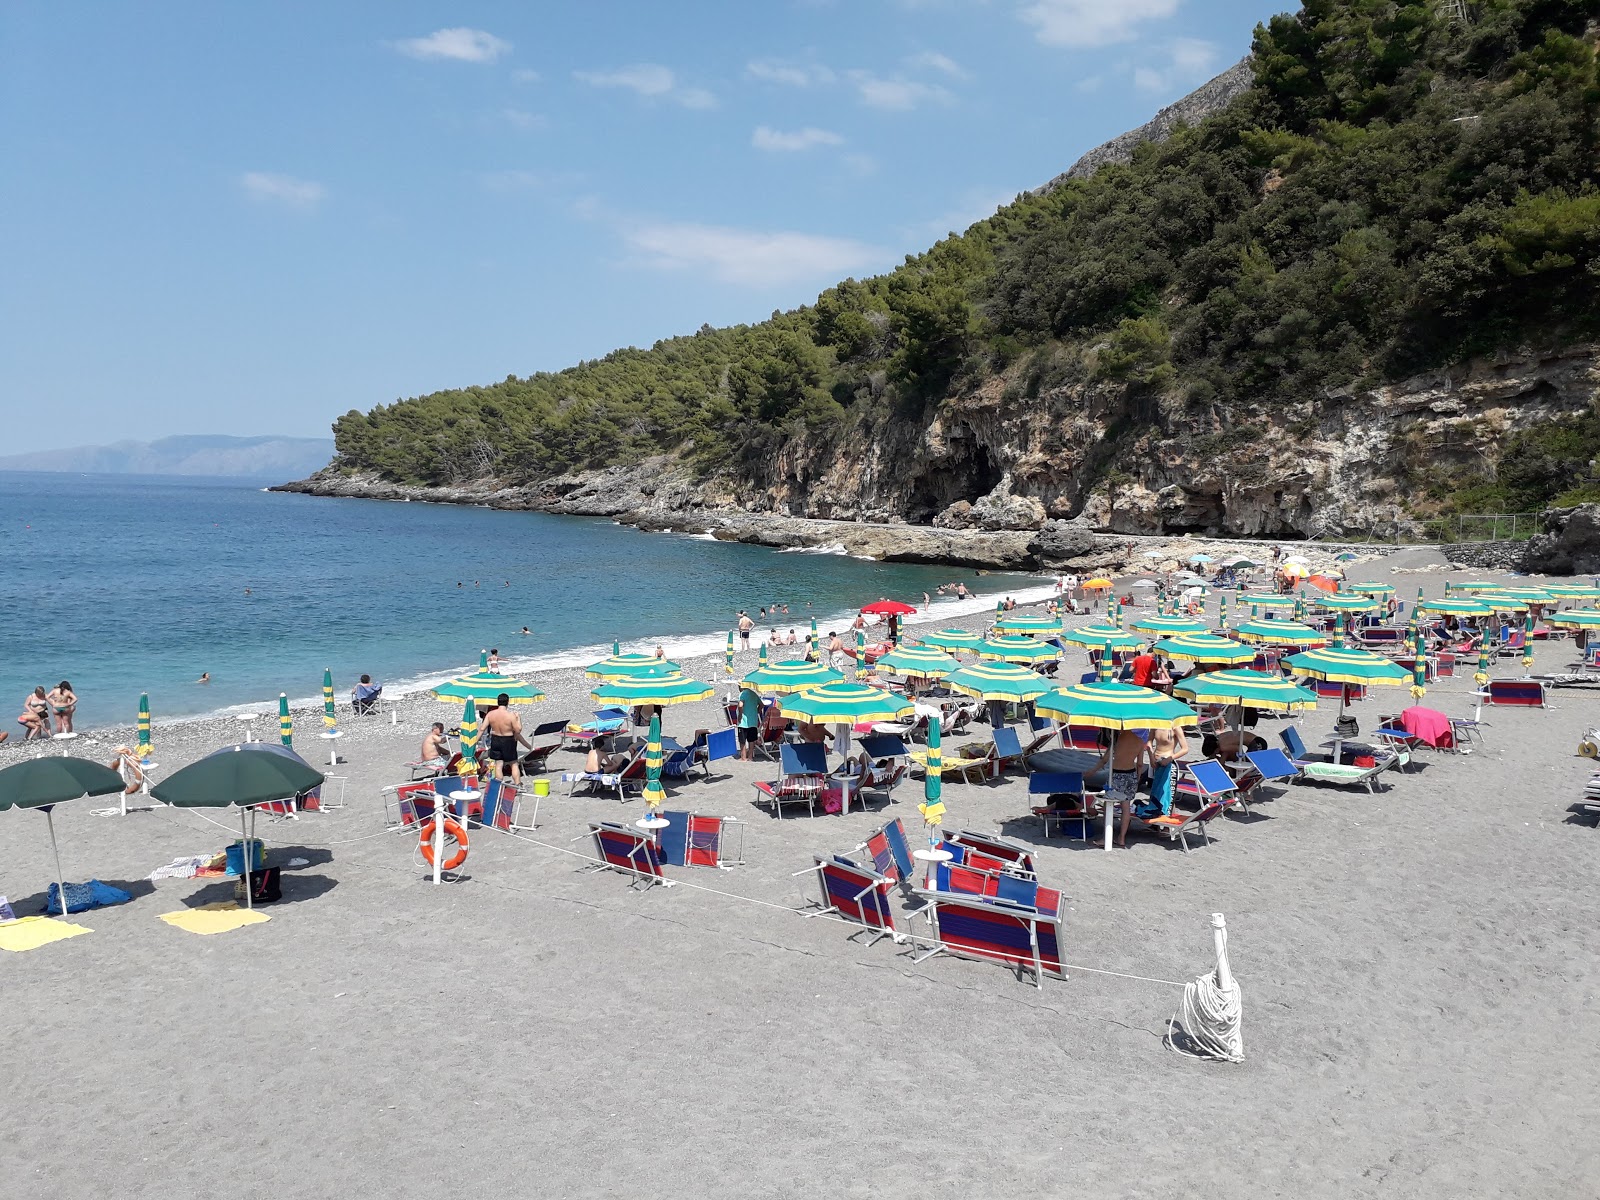 Foto de Spiaggia di Fiumicello localizado em área natural